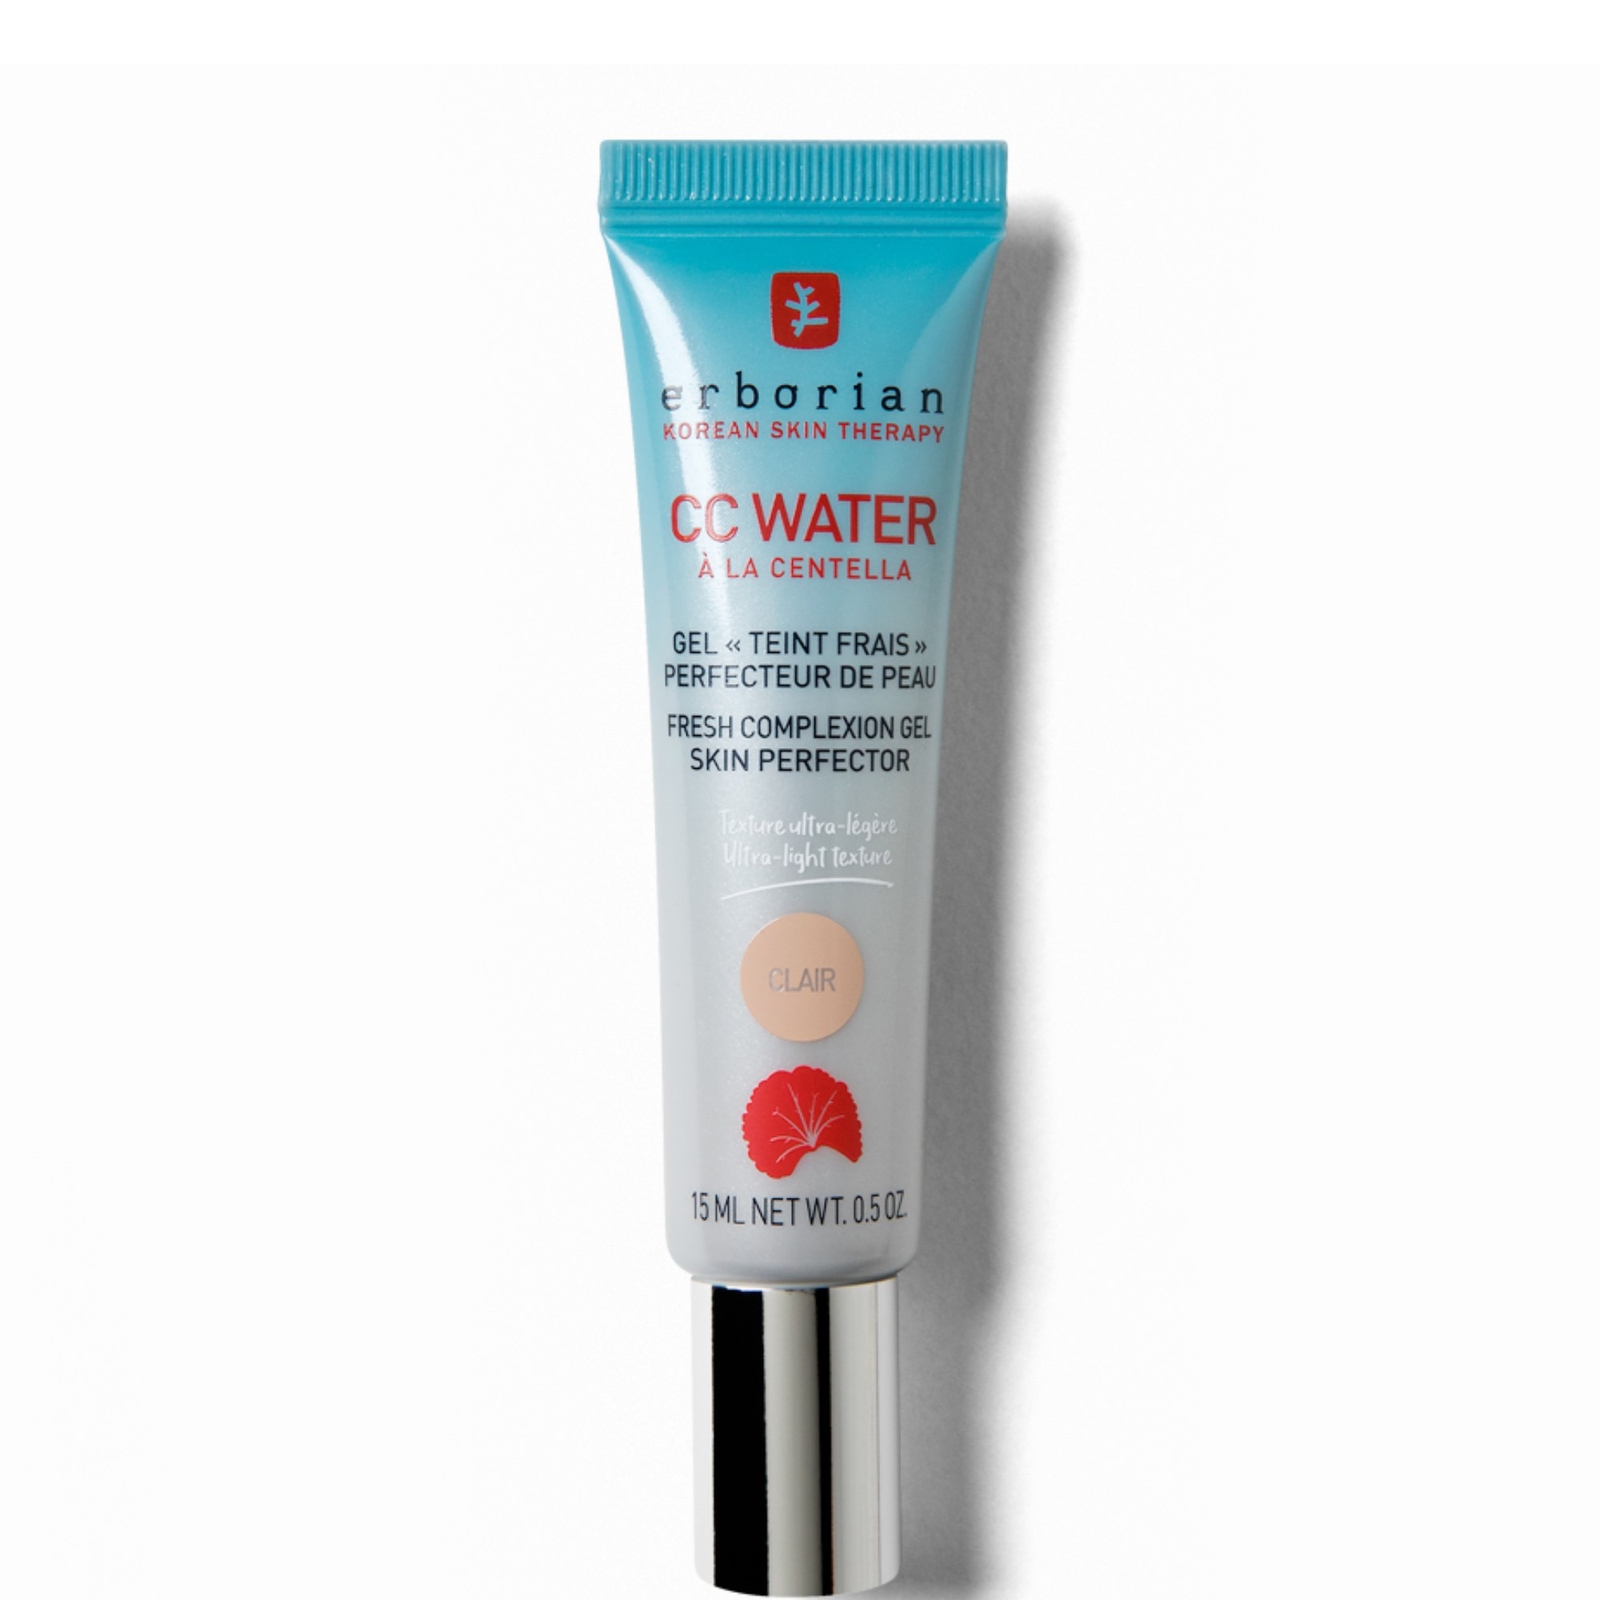 CC Water 15ml - Gel hidratante ultraligero refrescante y matificante para todo tipo de piel (Varios tonos) - Clair